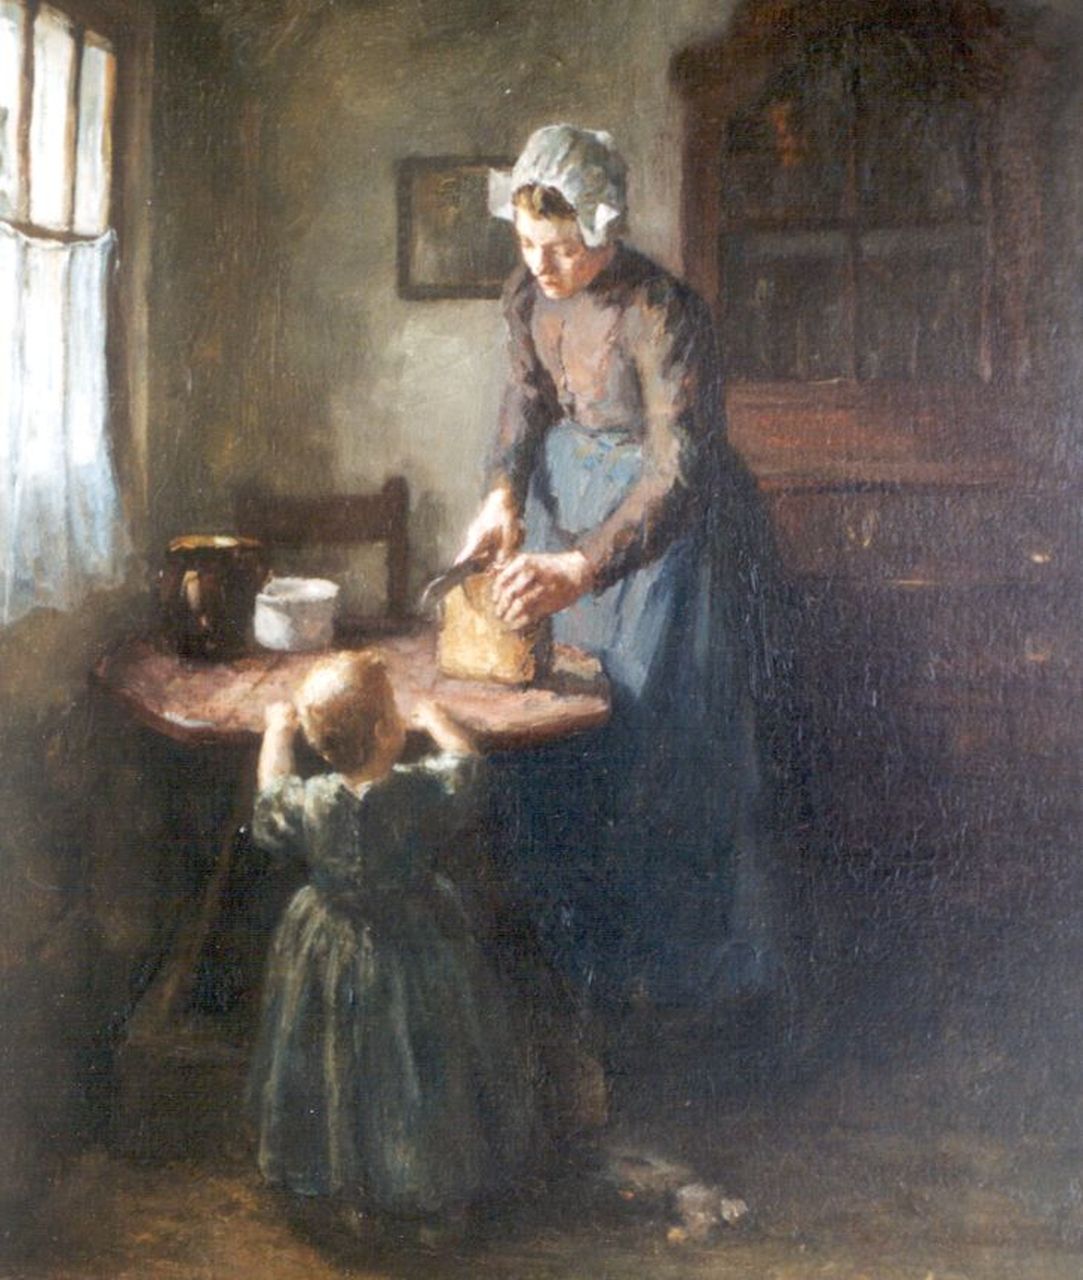 Tonge L.L. van der | 'Lammert' Leire van der Tonge, Interieur met moeder en kind, olieverf op doek 55,0 x 45,0 cm, gesigneerd rechtsonder